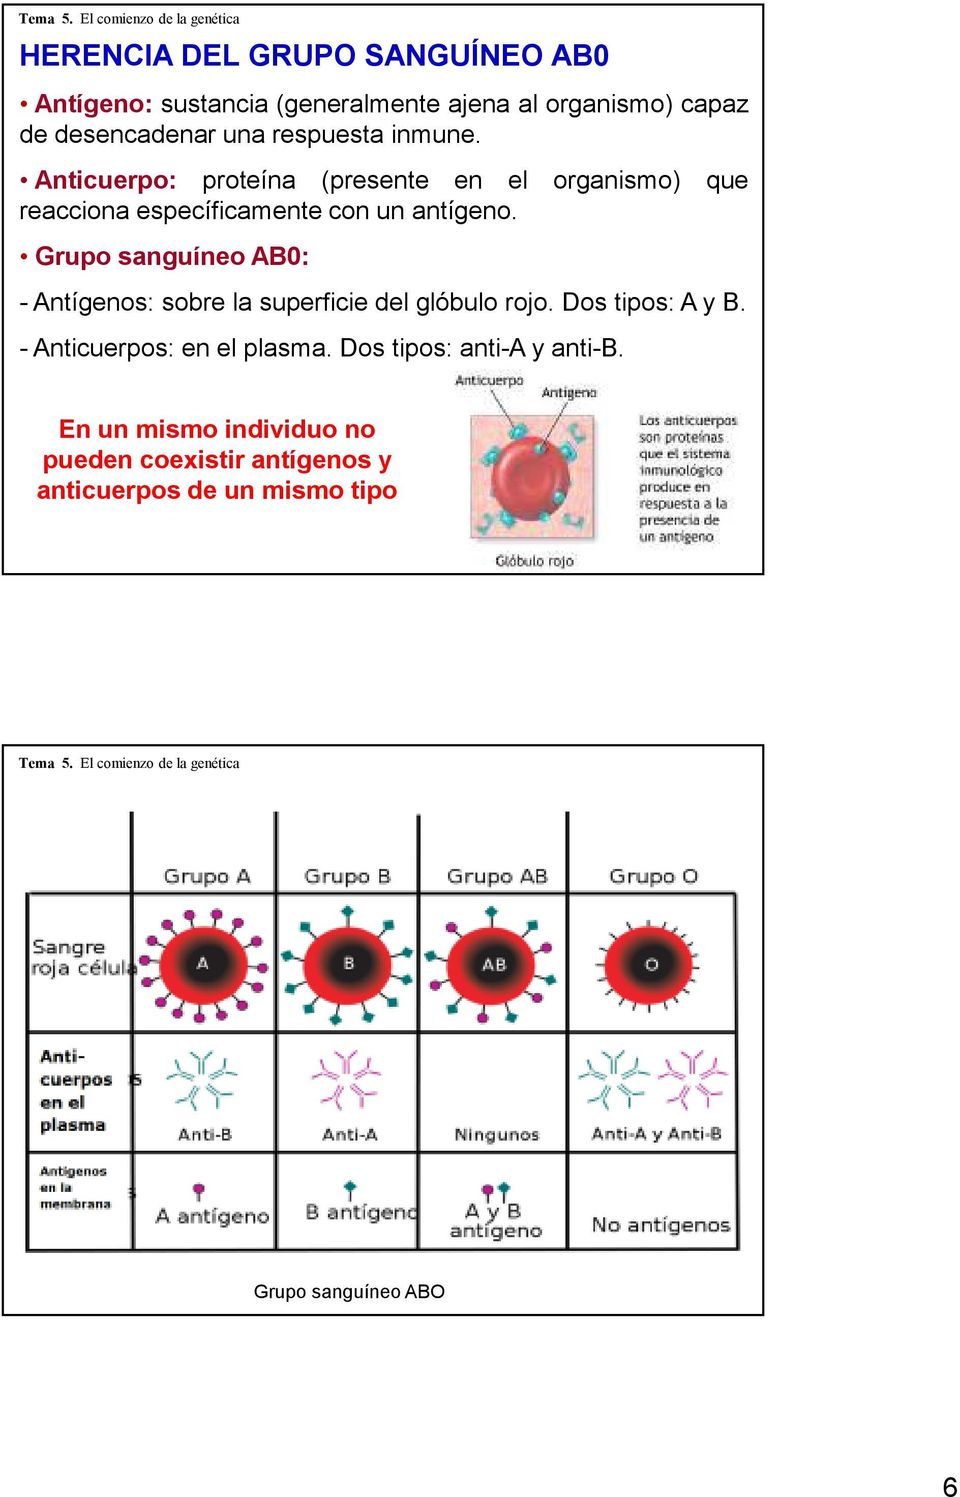 Grupo sanguíneo AB0: - Antígenos: sobre la superficie del glóbulo rojo. Dos tipos: A y B. - Anticuerpos: en el plasma.